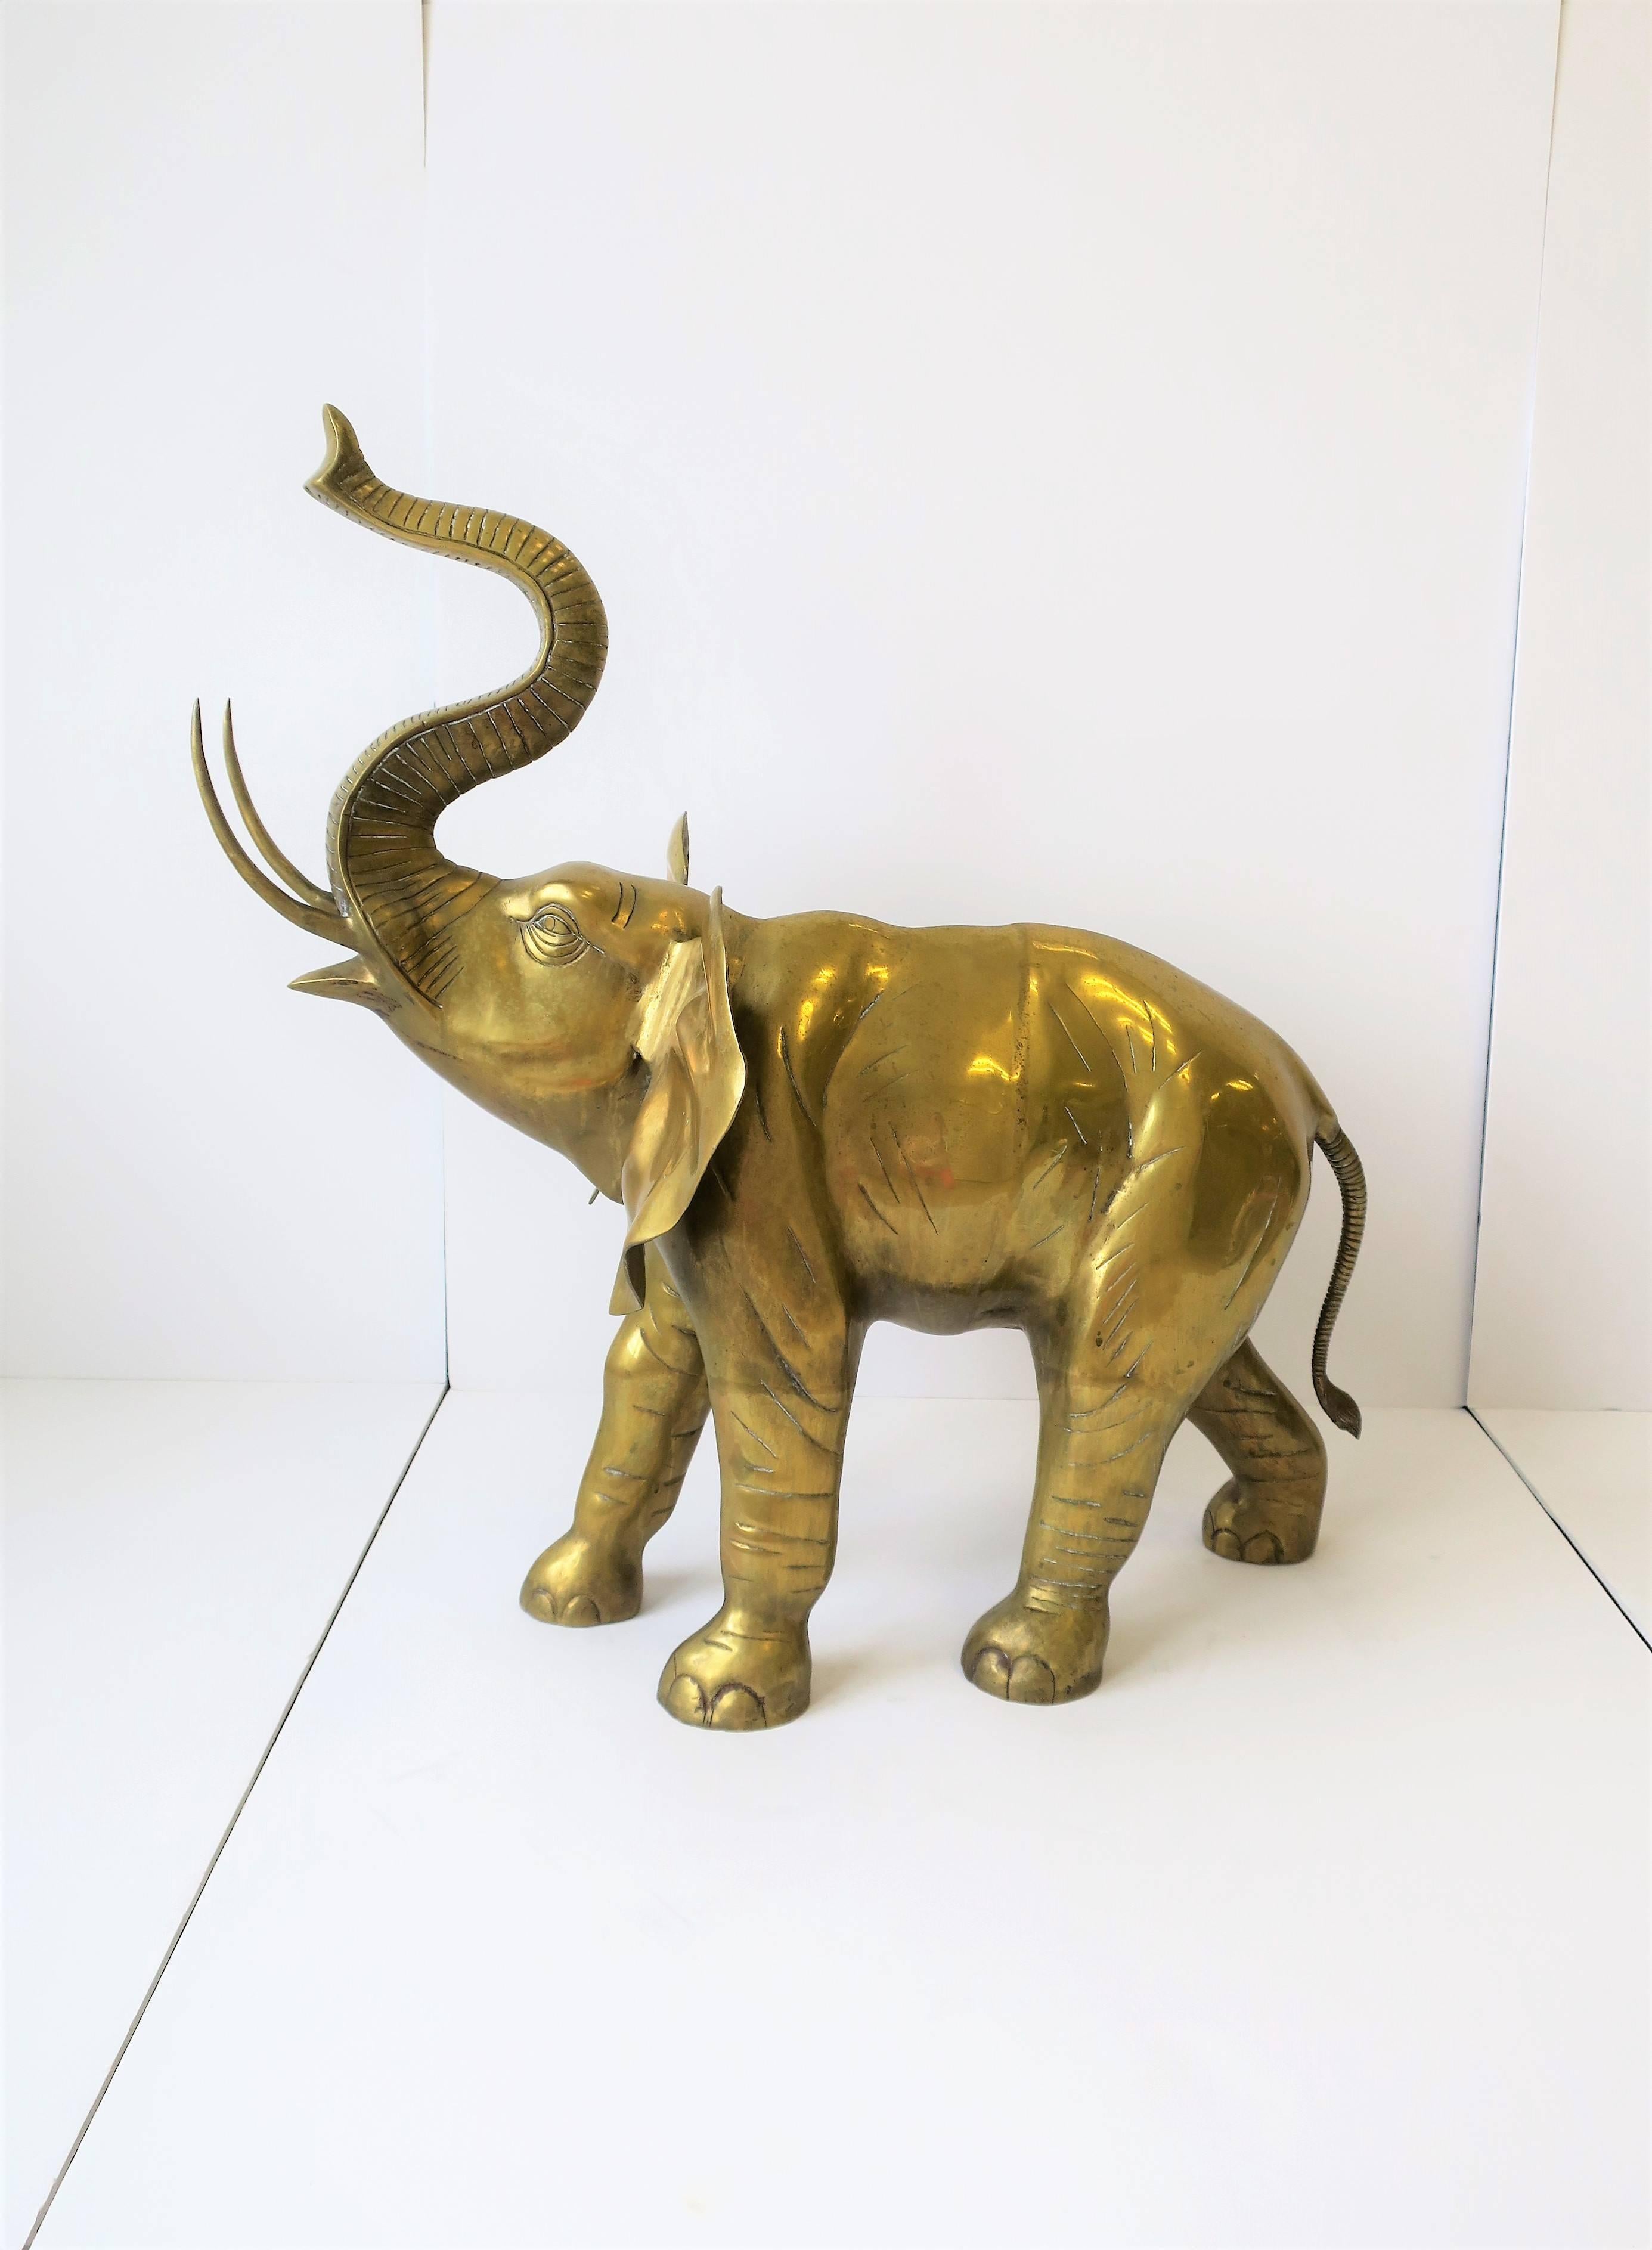 brass elephant 真鍮製 ゾウ 象 縦 63cm 横幅 56cm